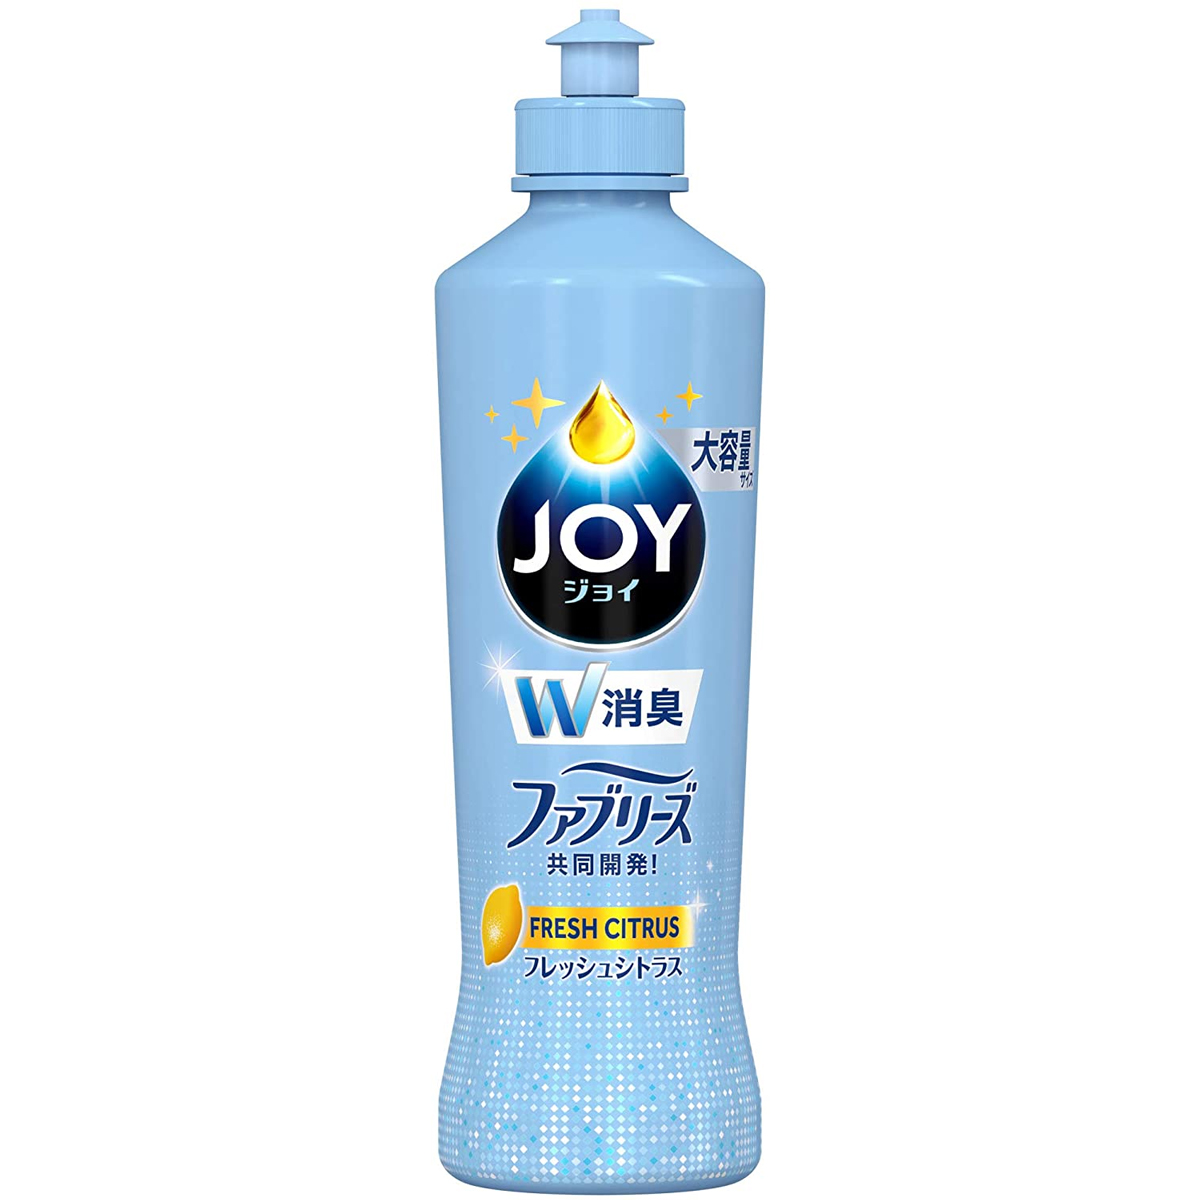 [販売終了] ジョイ ダブル消臭 台所用洗剤 フレッシュシトラス 濃縮コンパクトタイプ ボトル 300mL